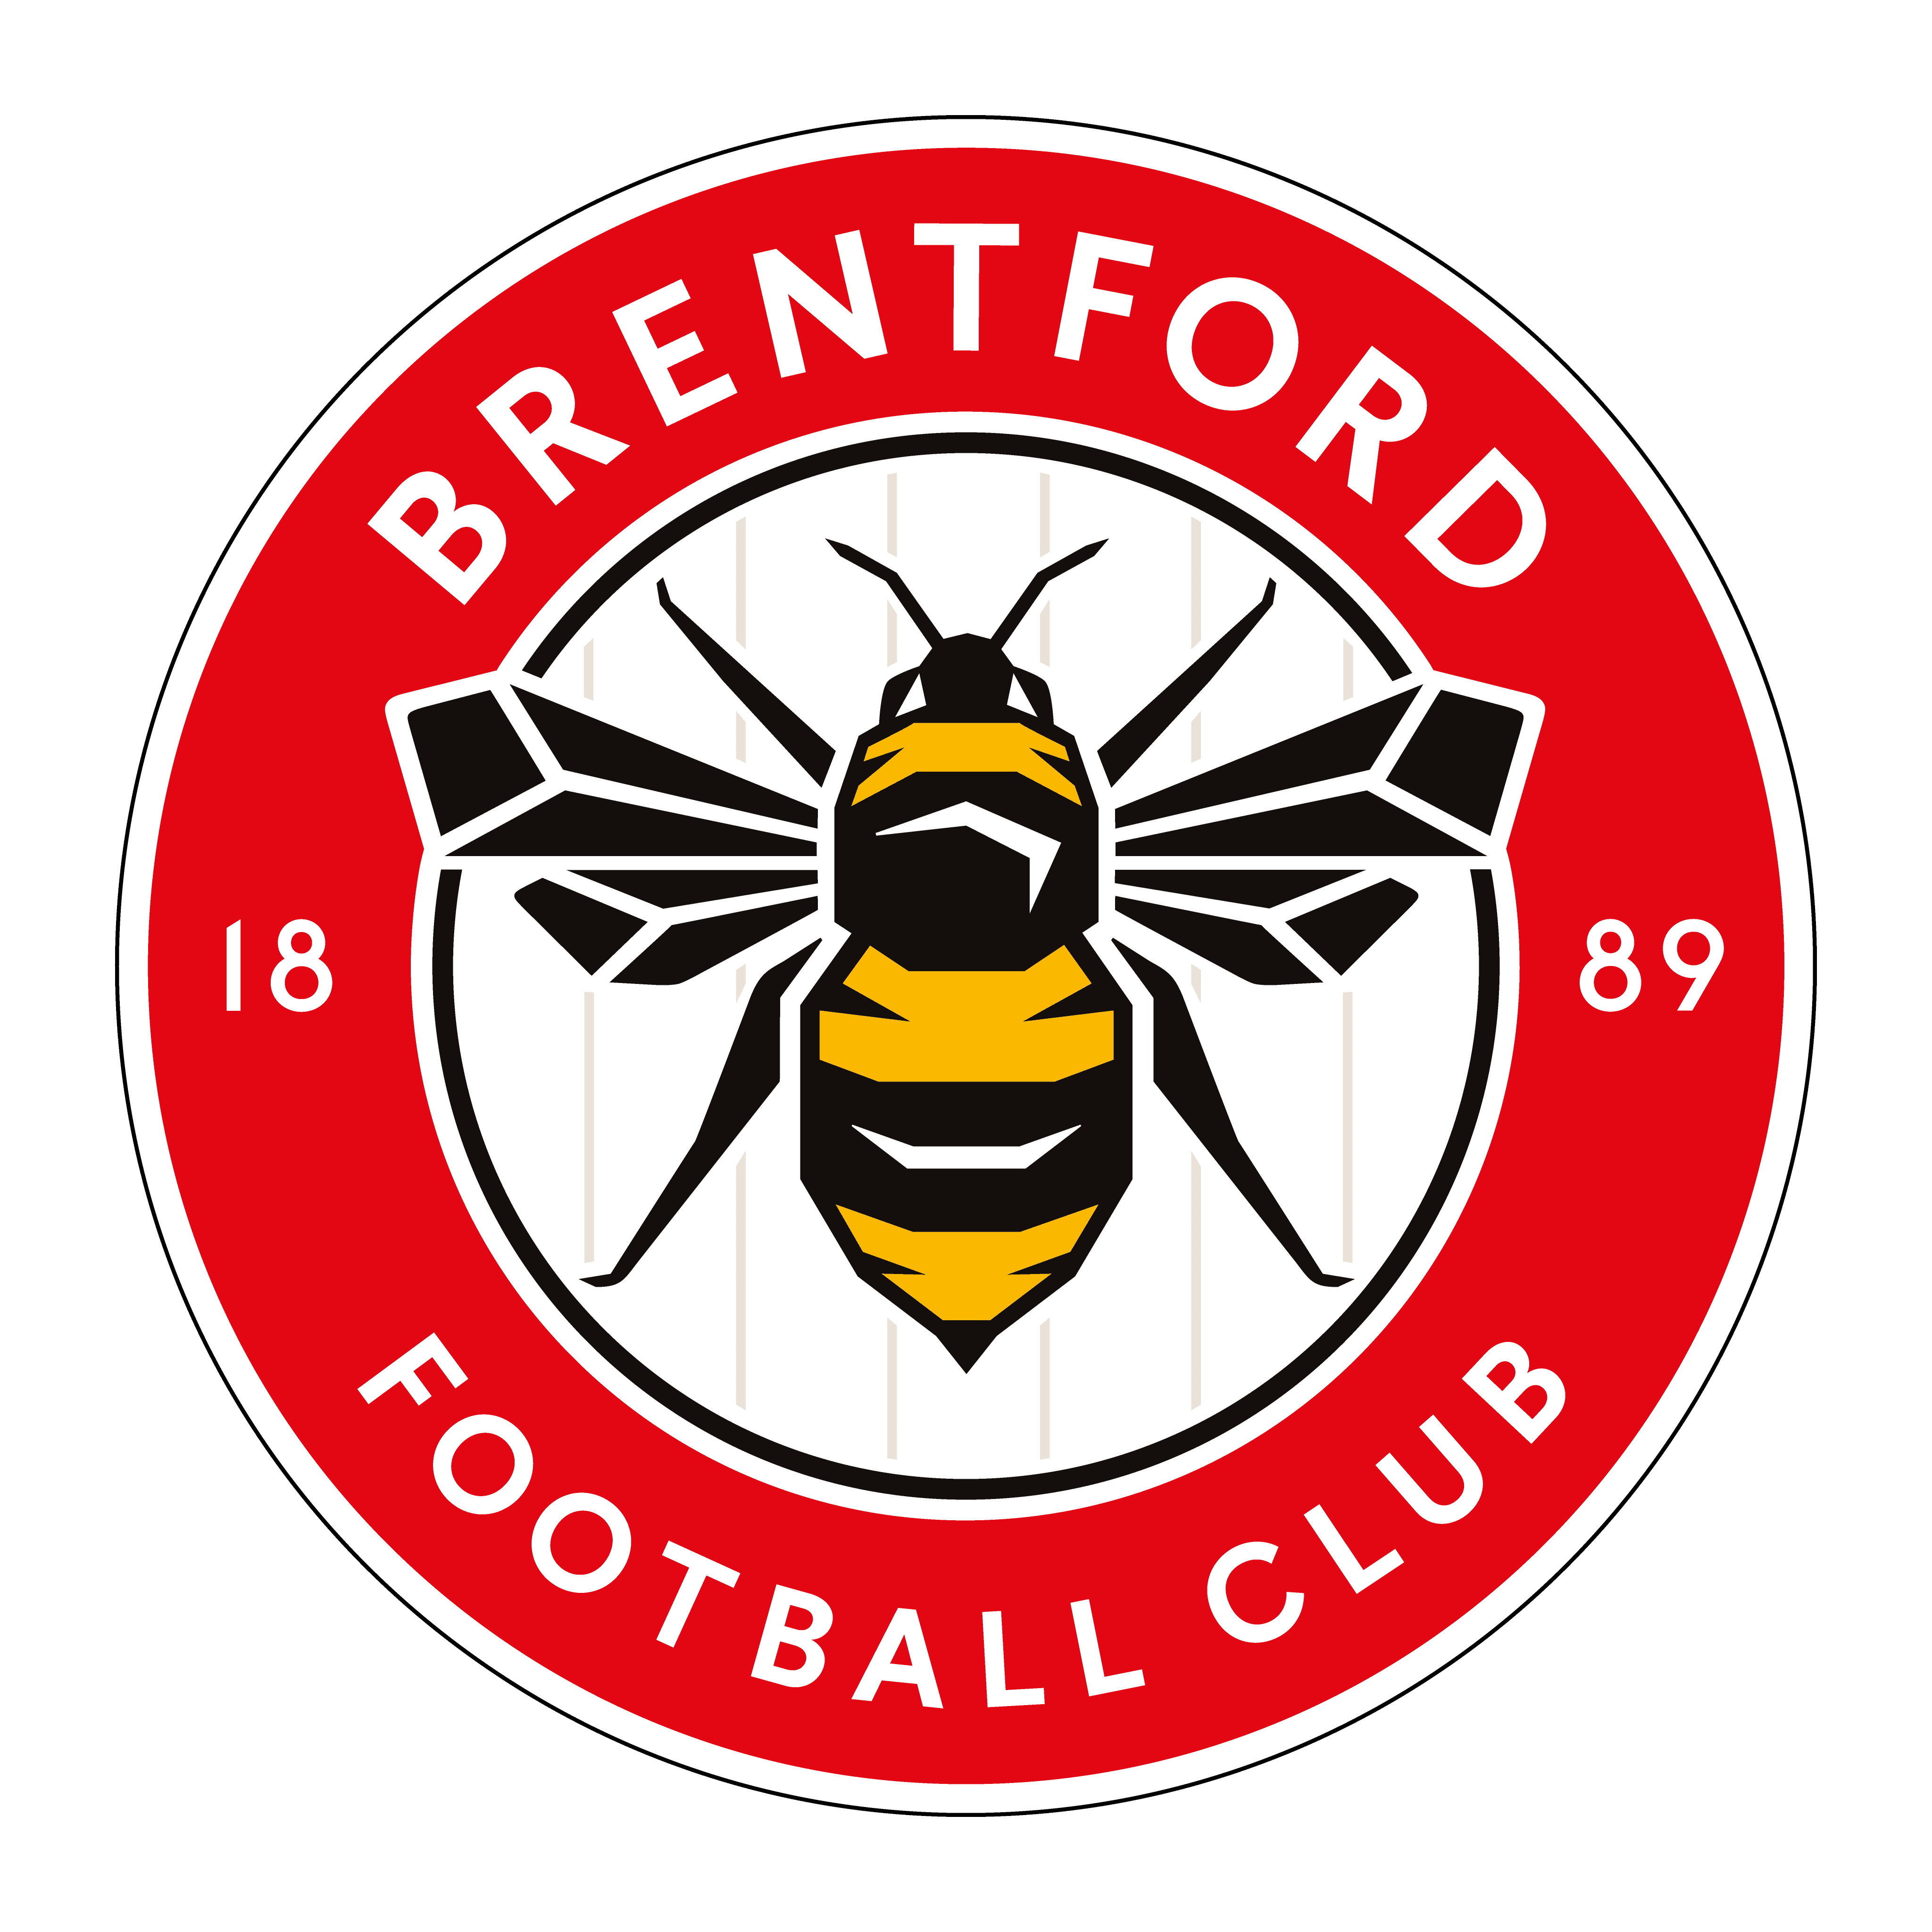 logo brentford football club